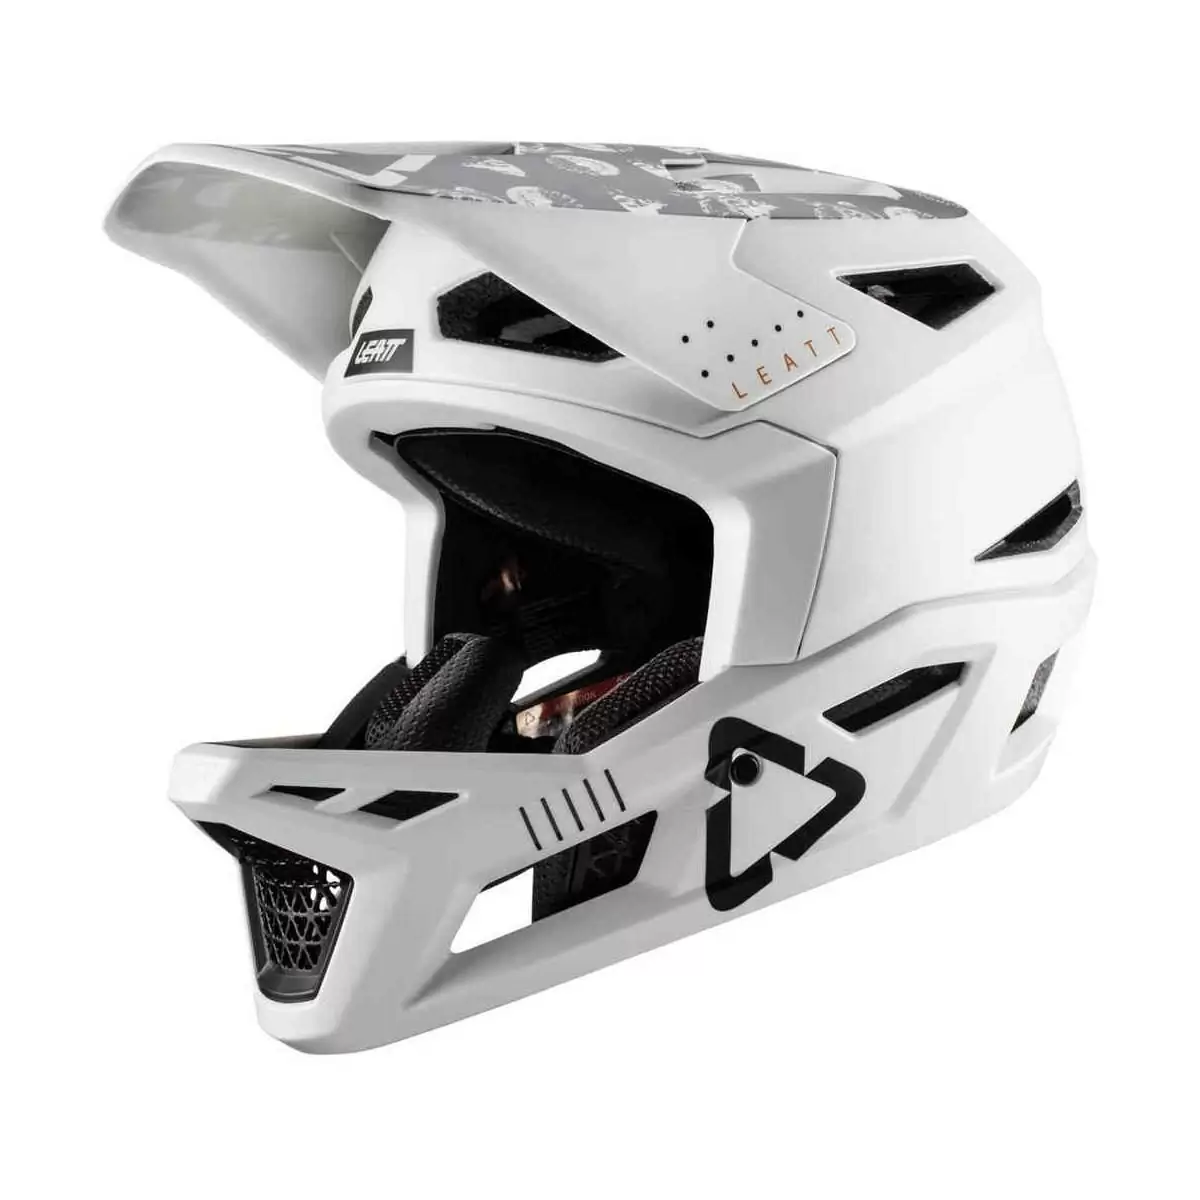 Gravity 4.0 Full Face MTB Helmet White Size M (57-58cm) - image